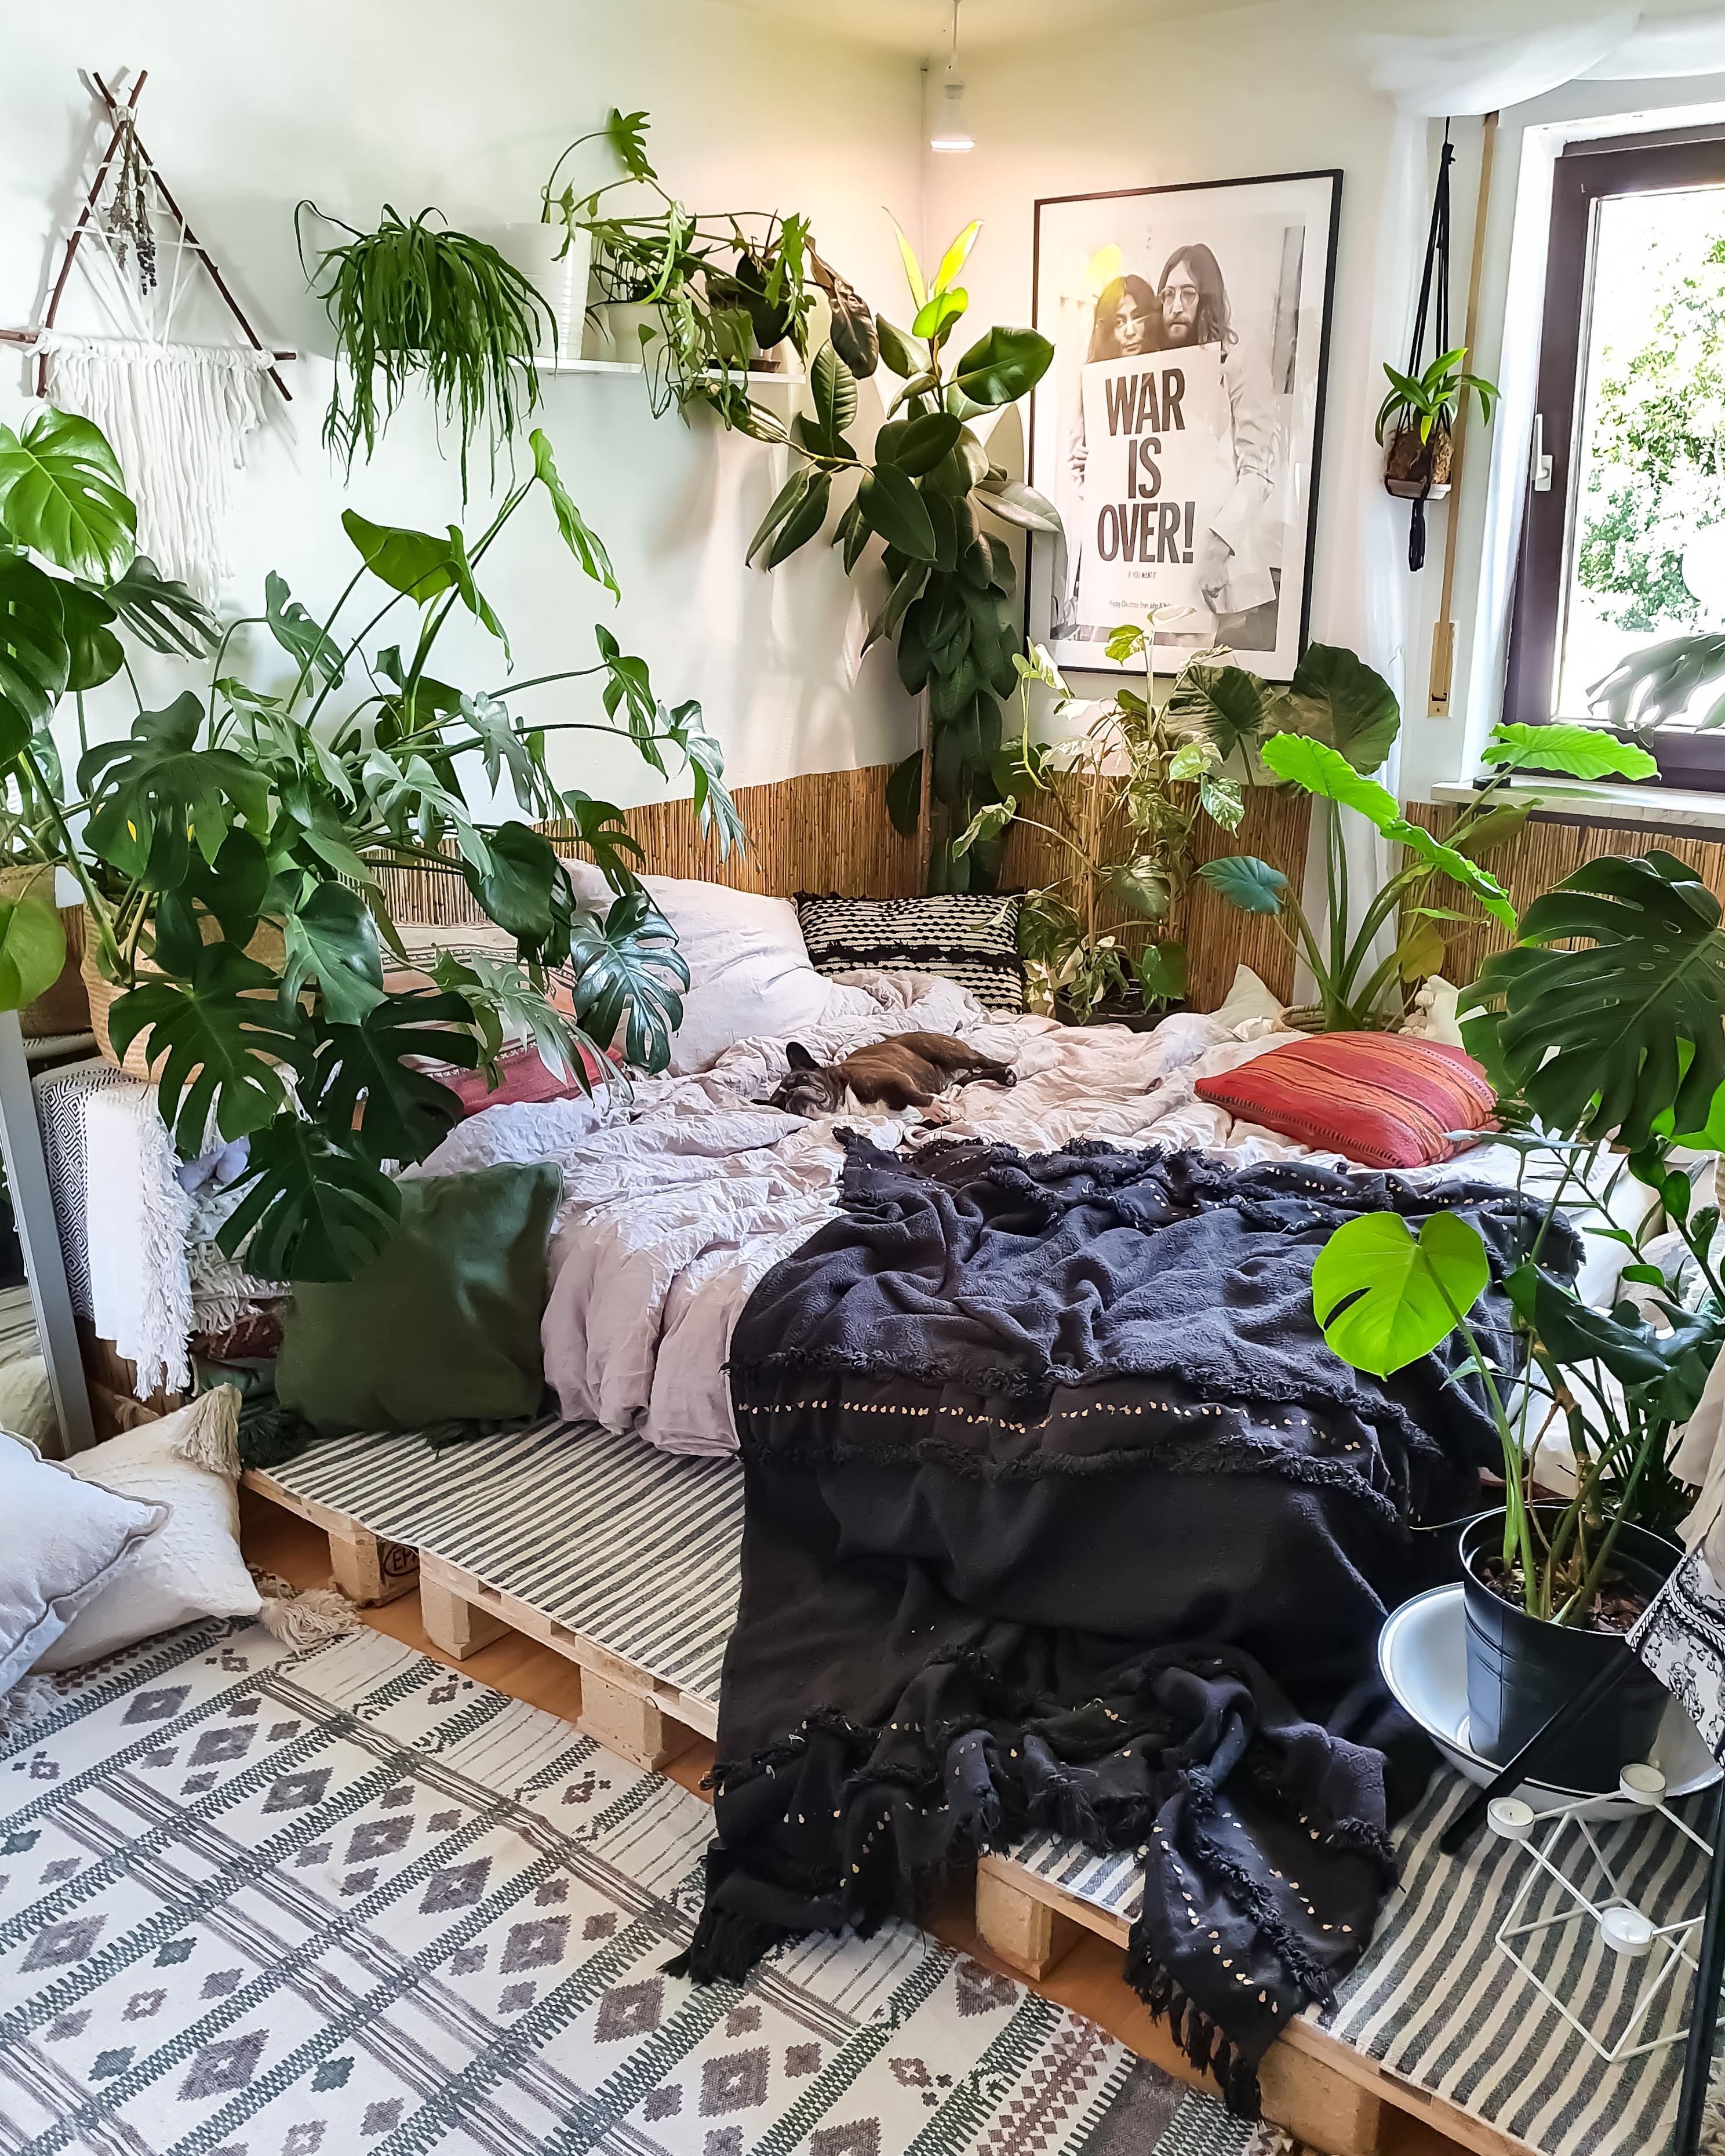 Mittwochs Mojo 🪴 #Schlafzimmer #Pflanzen #boho #hippie #Paletten #Bett #Bettdecke #Gummibaum #Monstera #Decke #überwurf